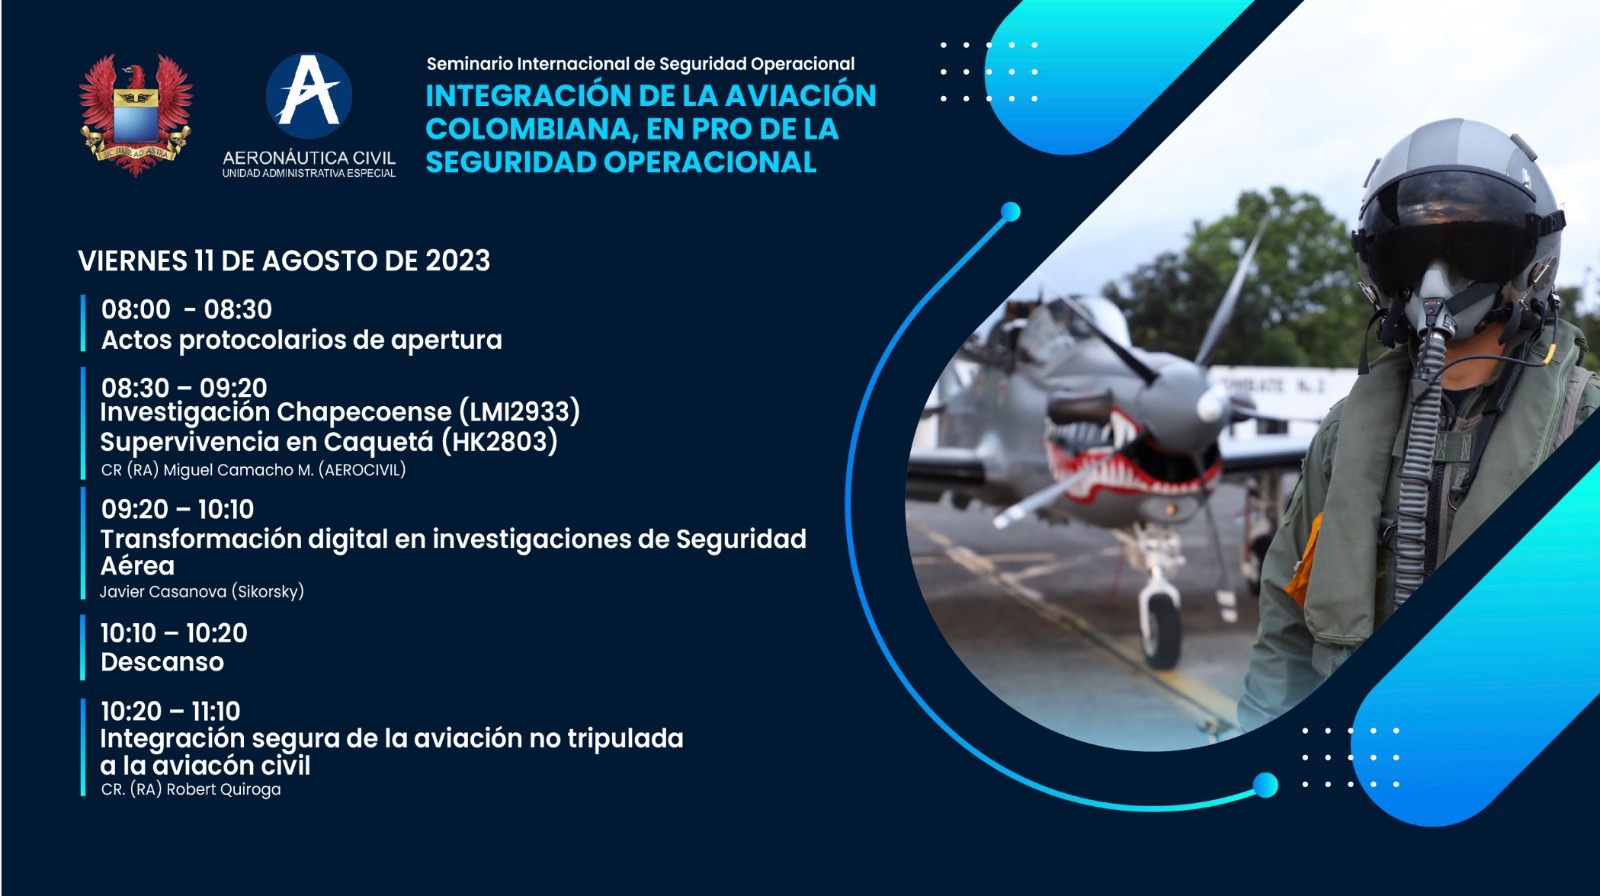 Seminario Internacional de Seguridad Operacional será desarrollado en la ciudad de Bogotá